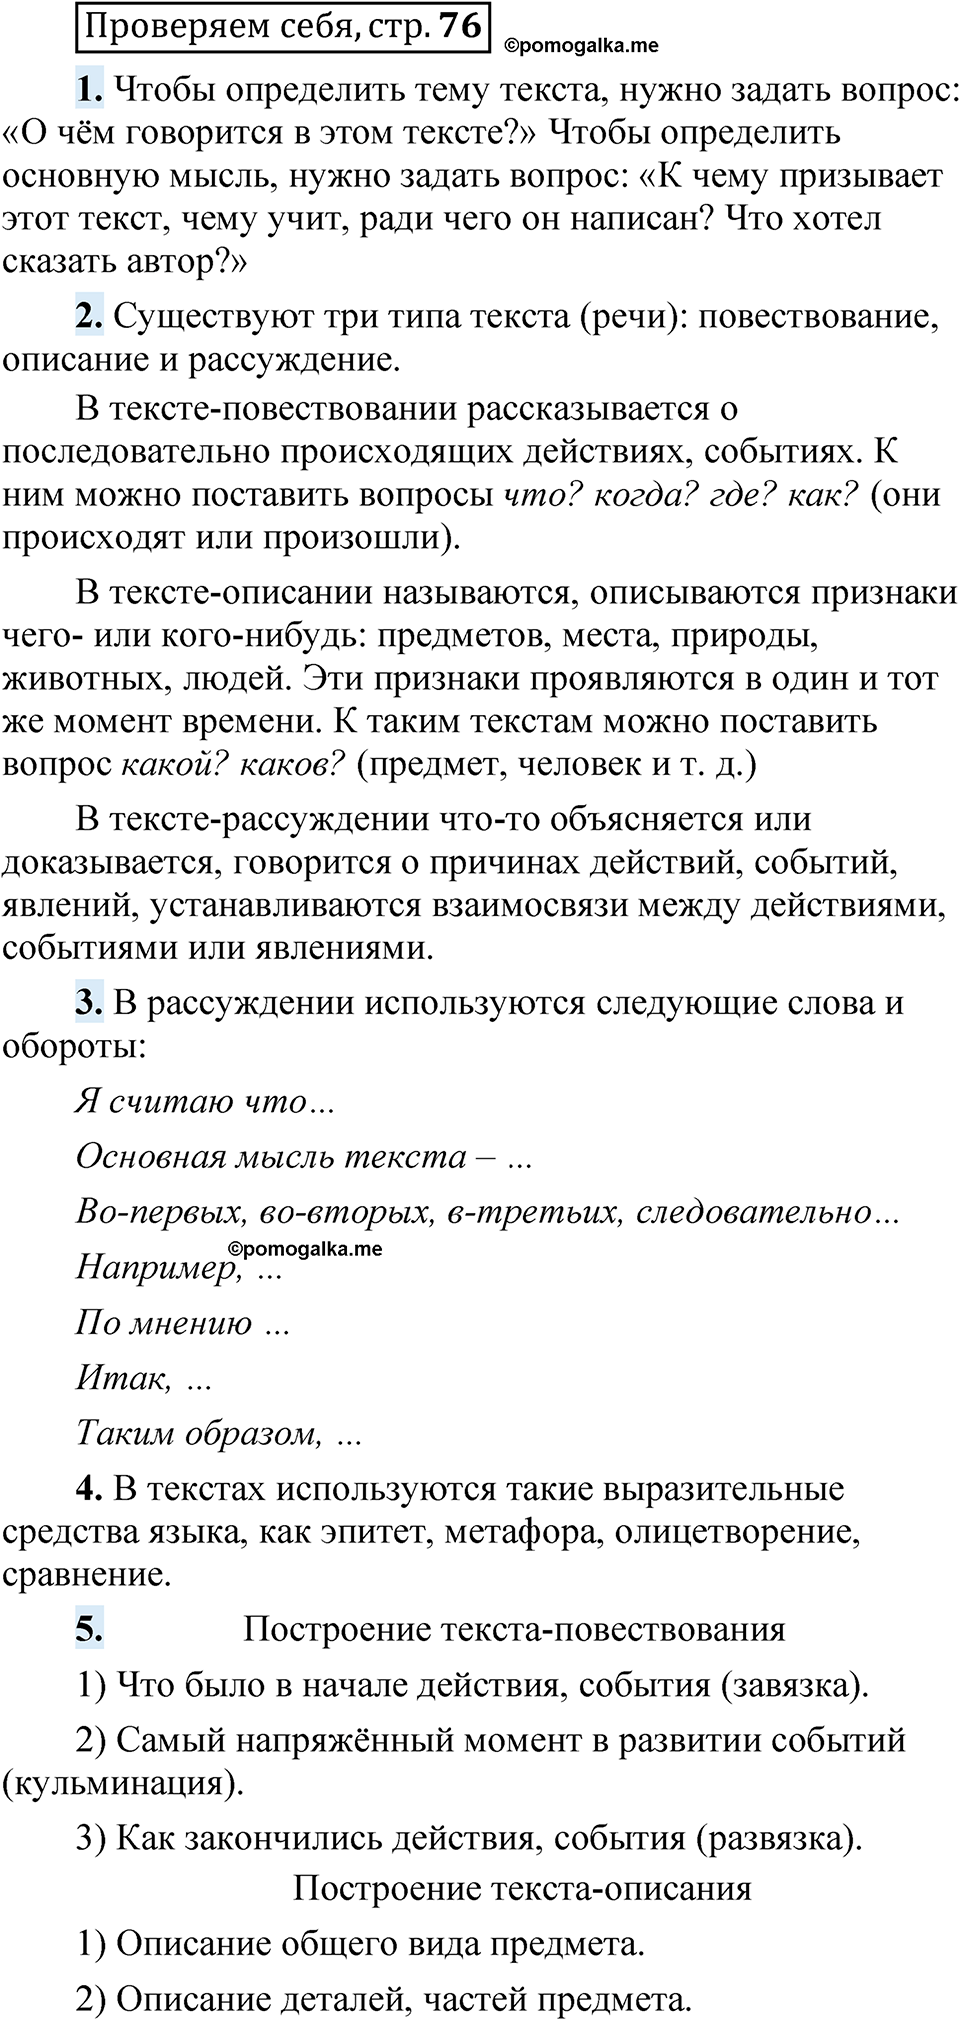 страница 76 Проверяем себя русский язык 5 класс Быстрова, Кибирева 1 часть 2021 год